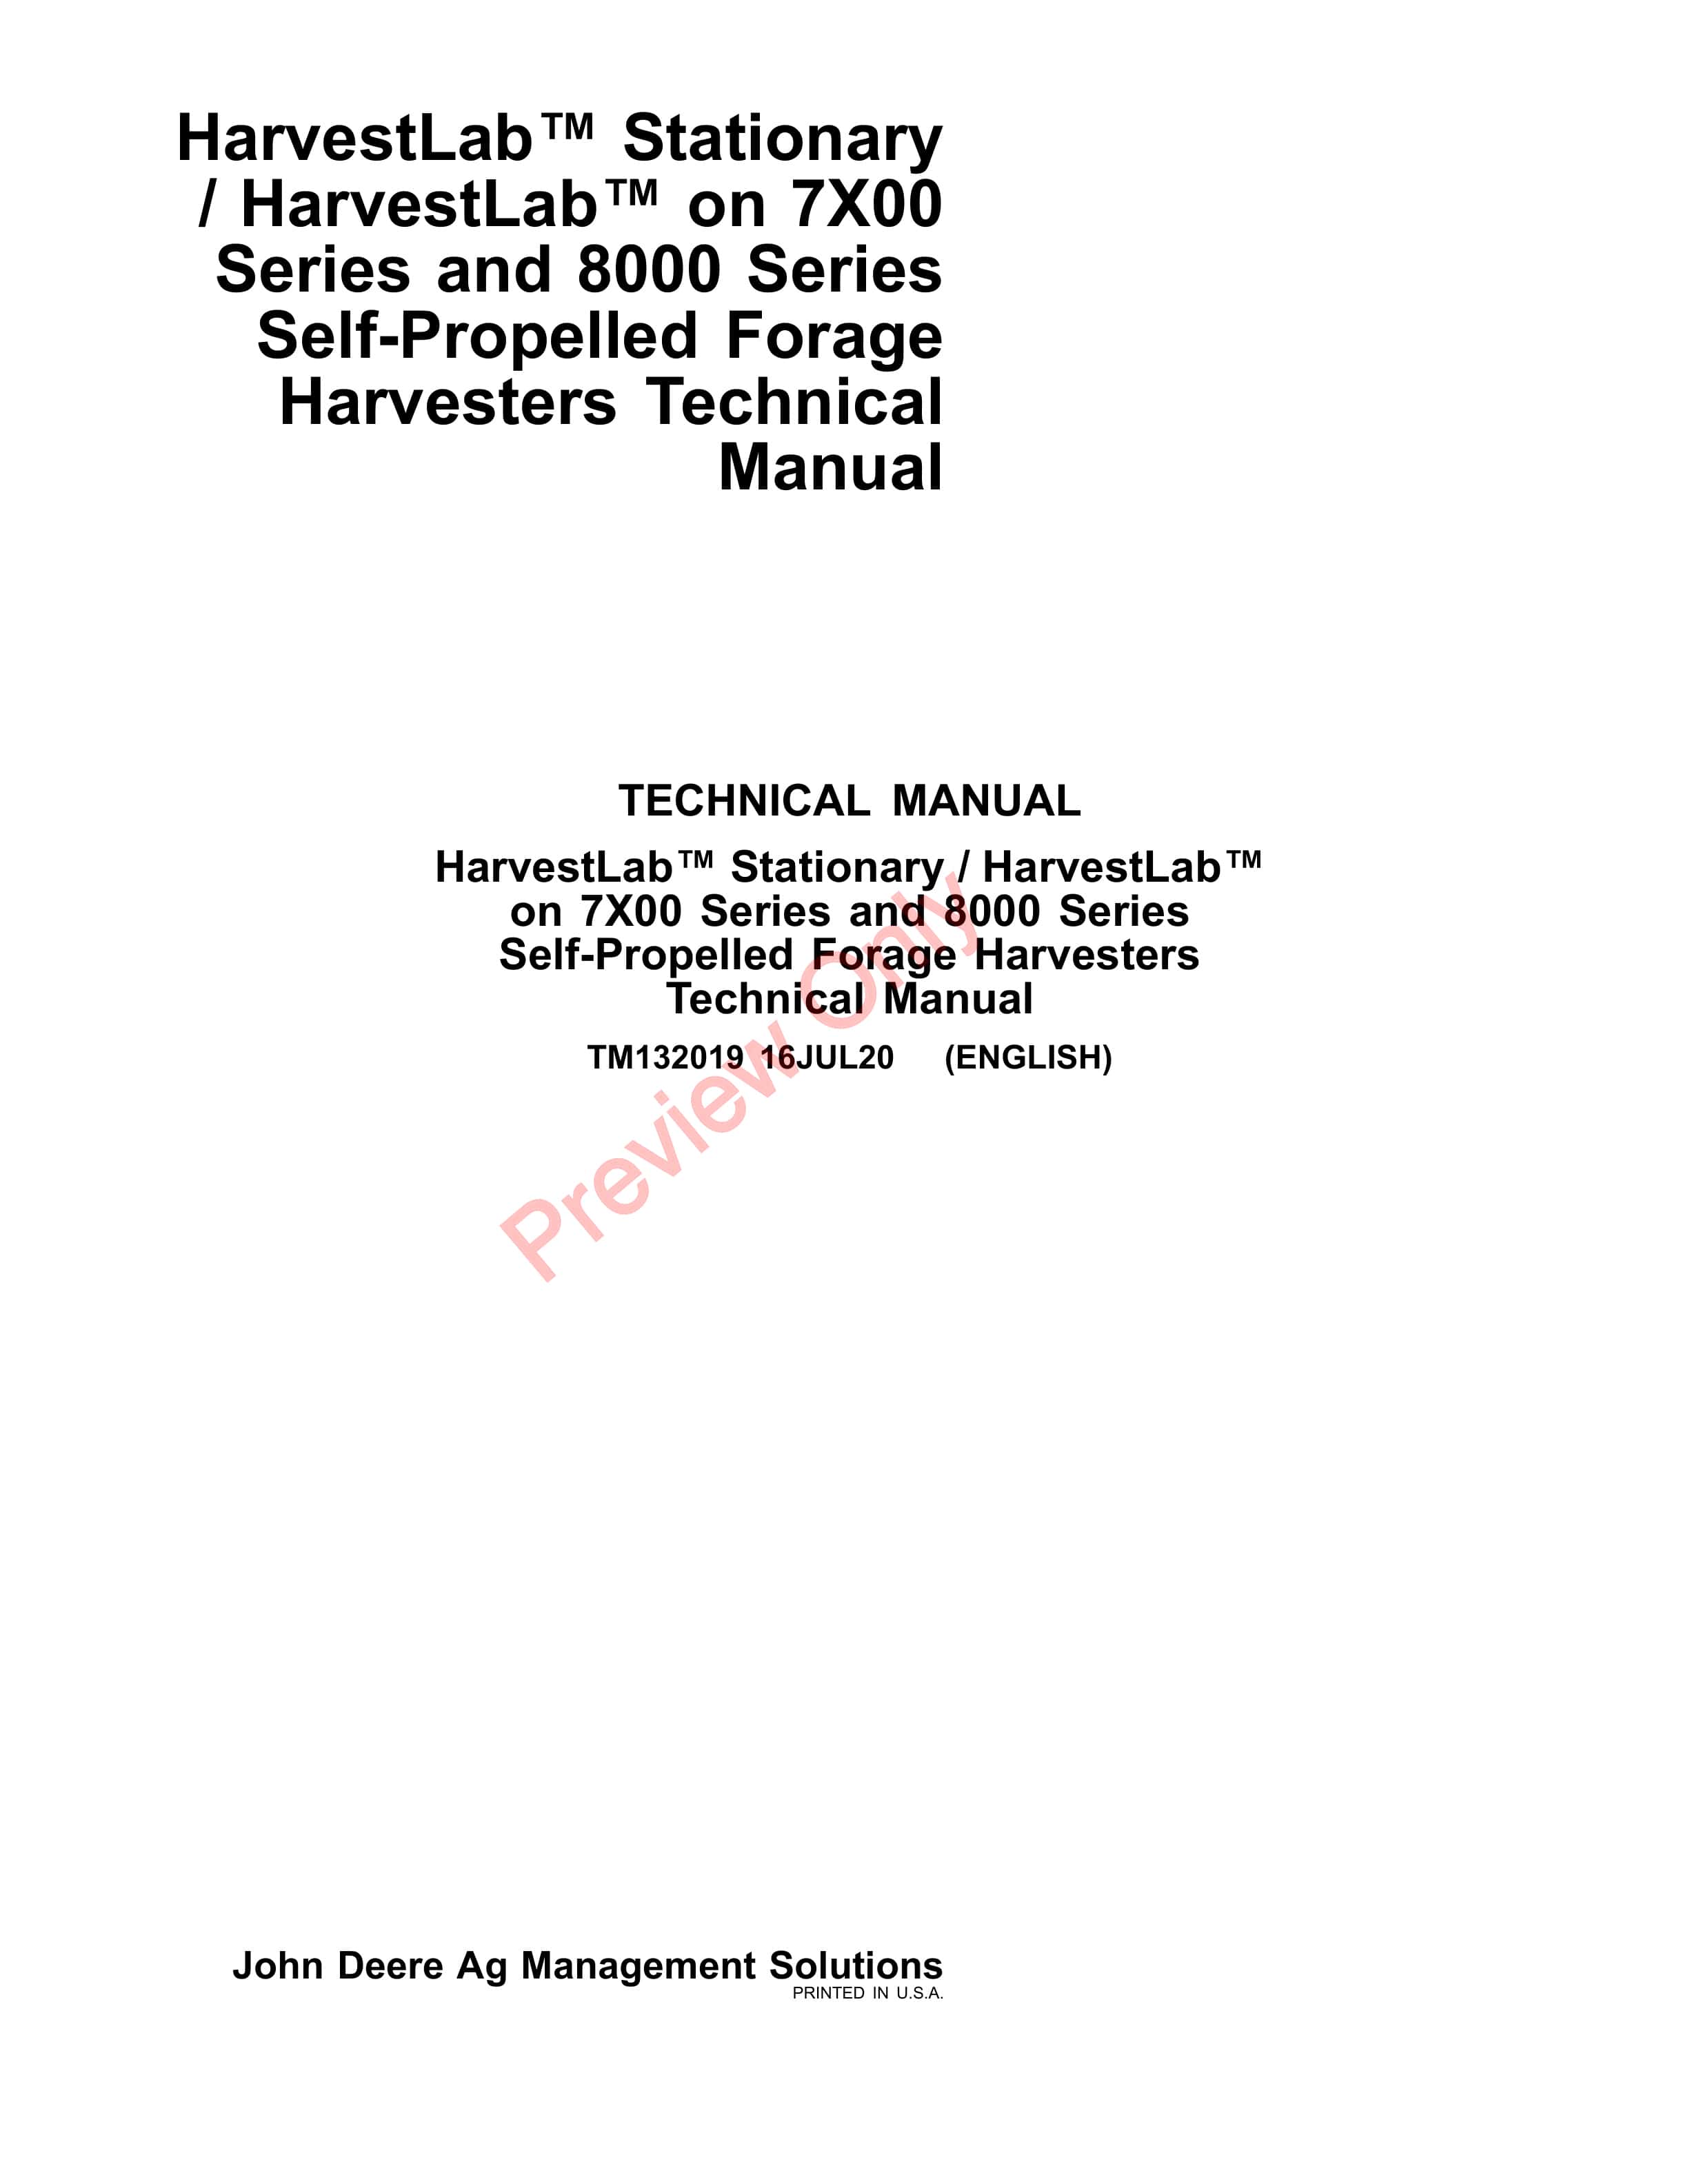 John Deere HarvestLab Stationary HarvestLab on 7X00 and 8000 Series Self Technical Manual TM132019 16JUL20 1